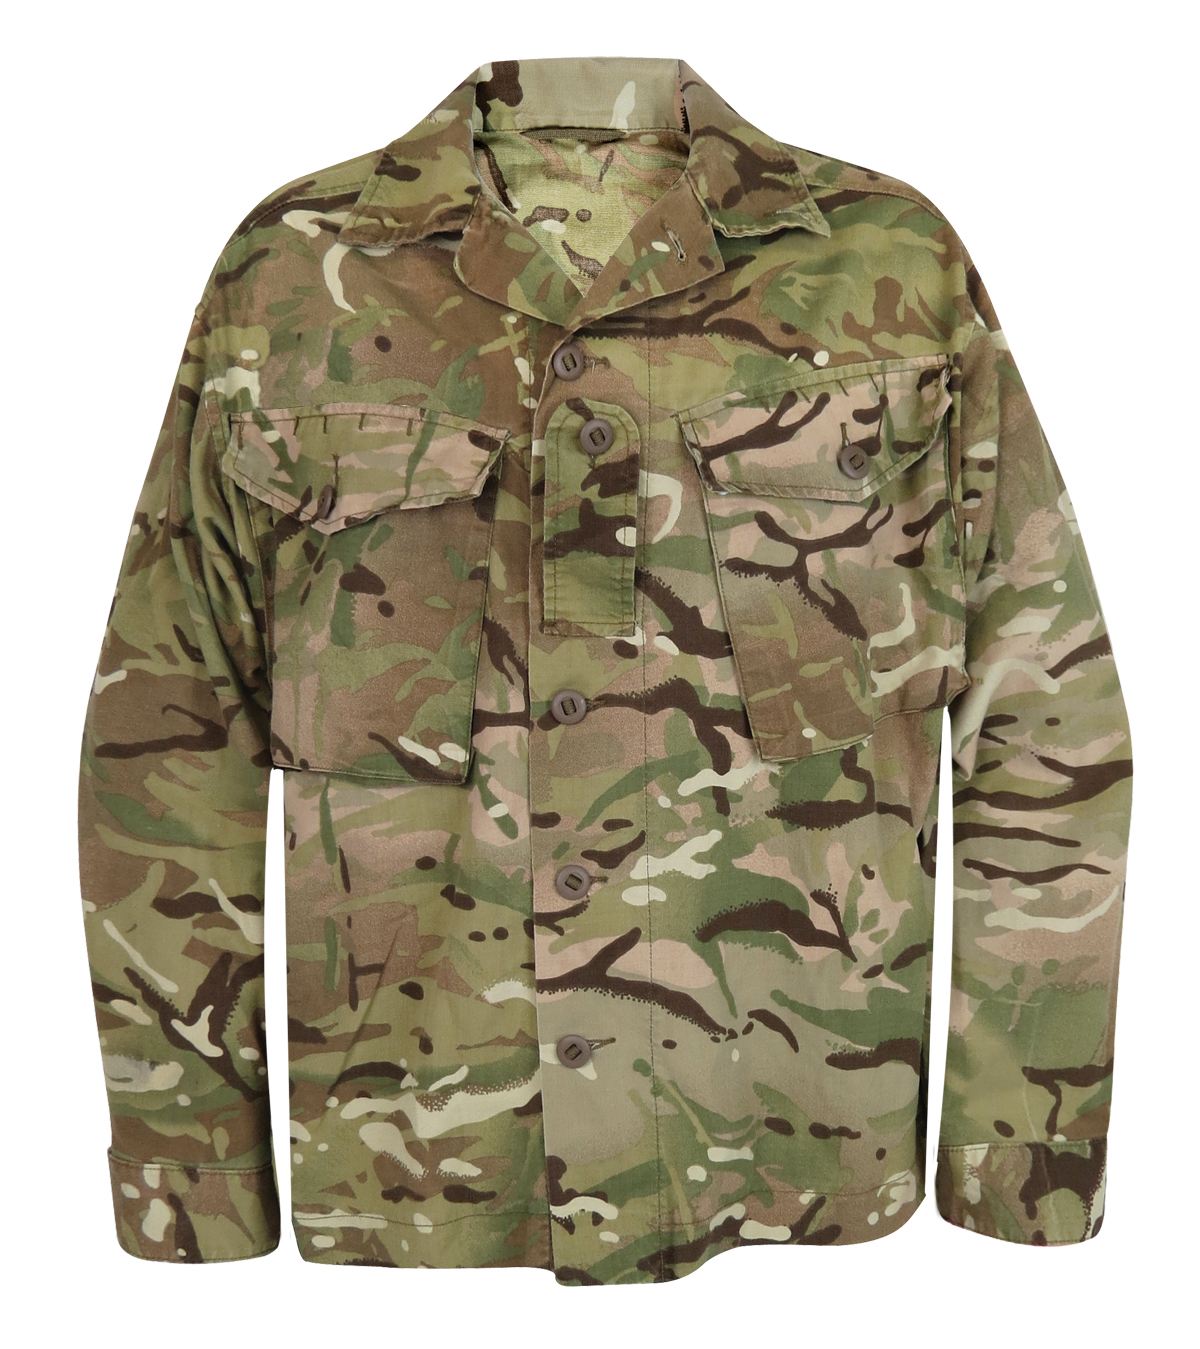 New British MTP Combat Shirt (CS95 Issue) by British Army